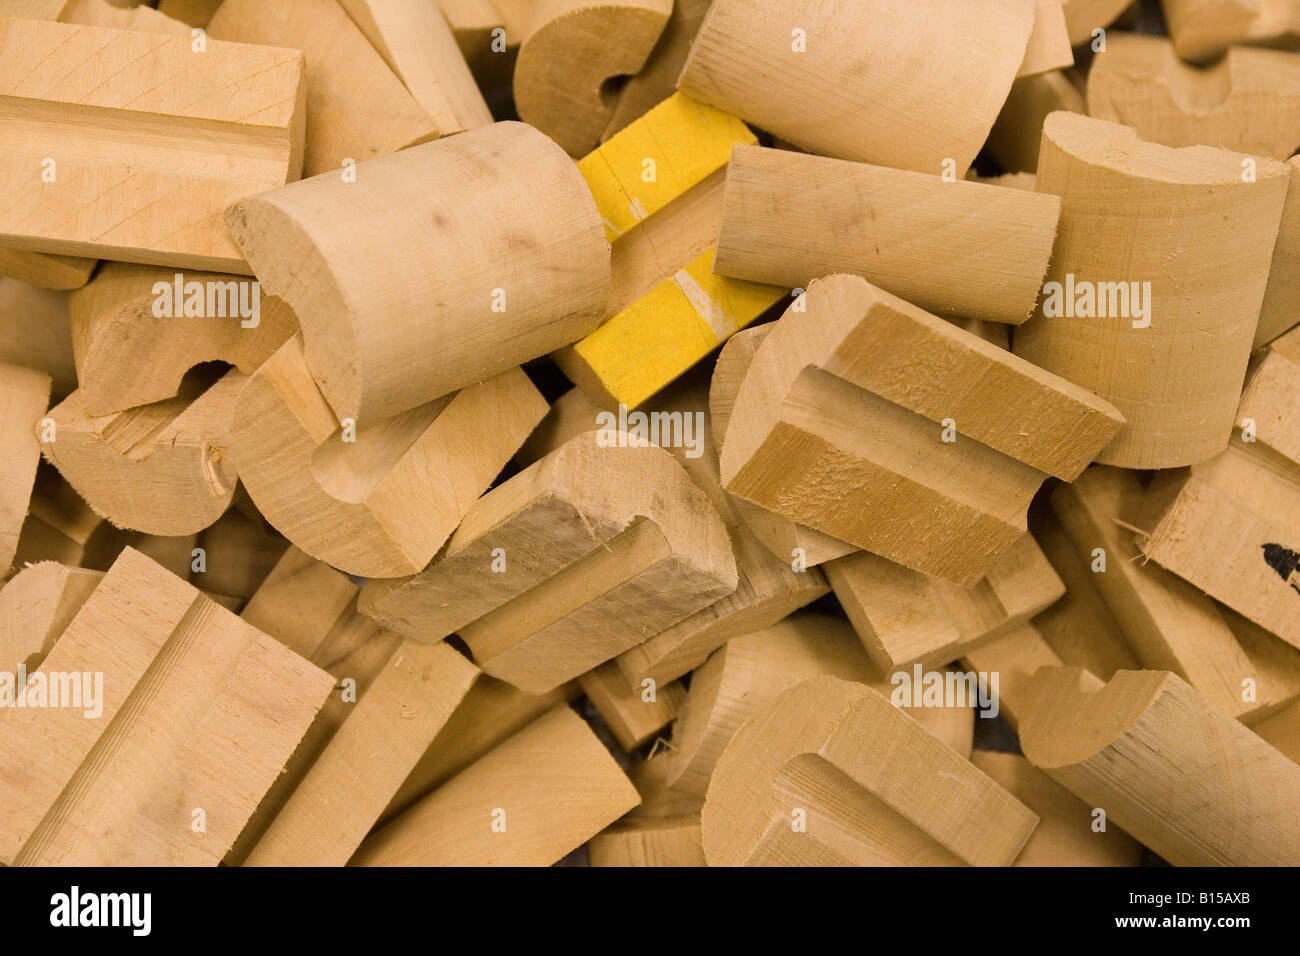 Tuyau en bois poser les isolateurs dans une pile, en attente d'installation. Banque D'Images